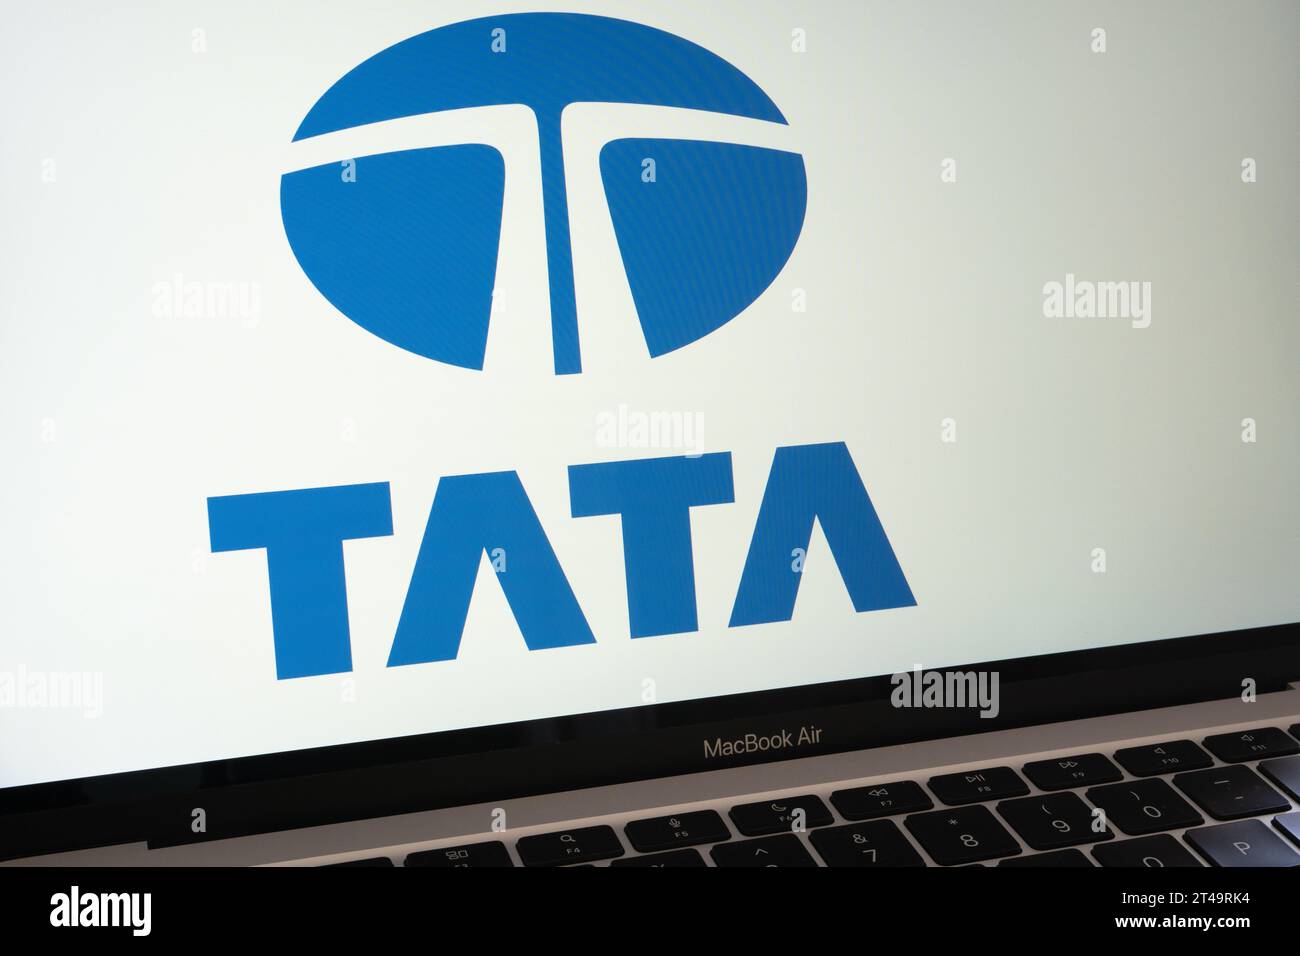 Logo du groupe Tata visible sur l'écran de l'ordinateur portable. Concept. Stafford, Royaume-Uni, 29 octobre 2023 Banque D'Images